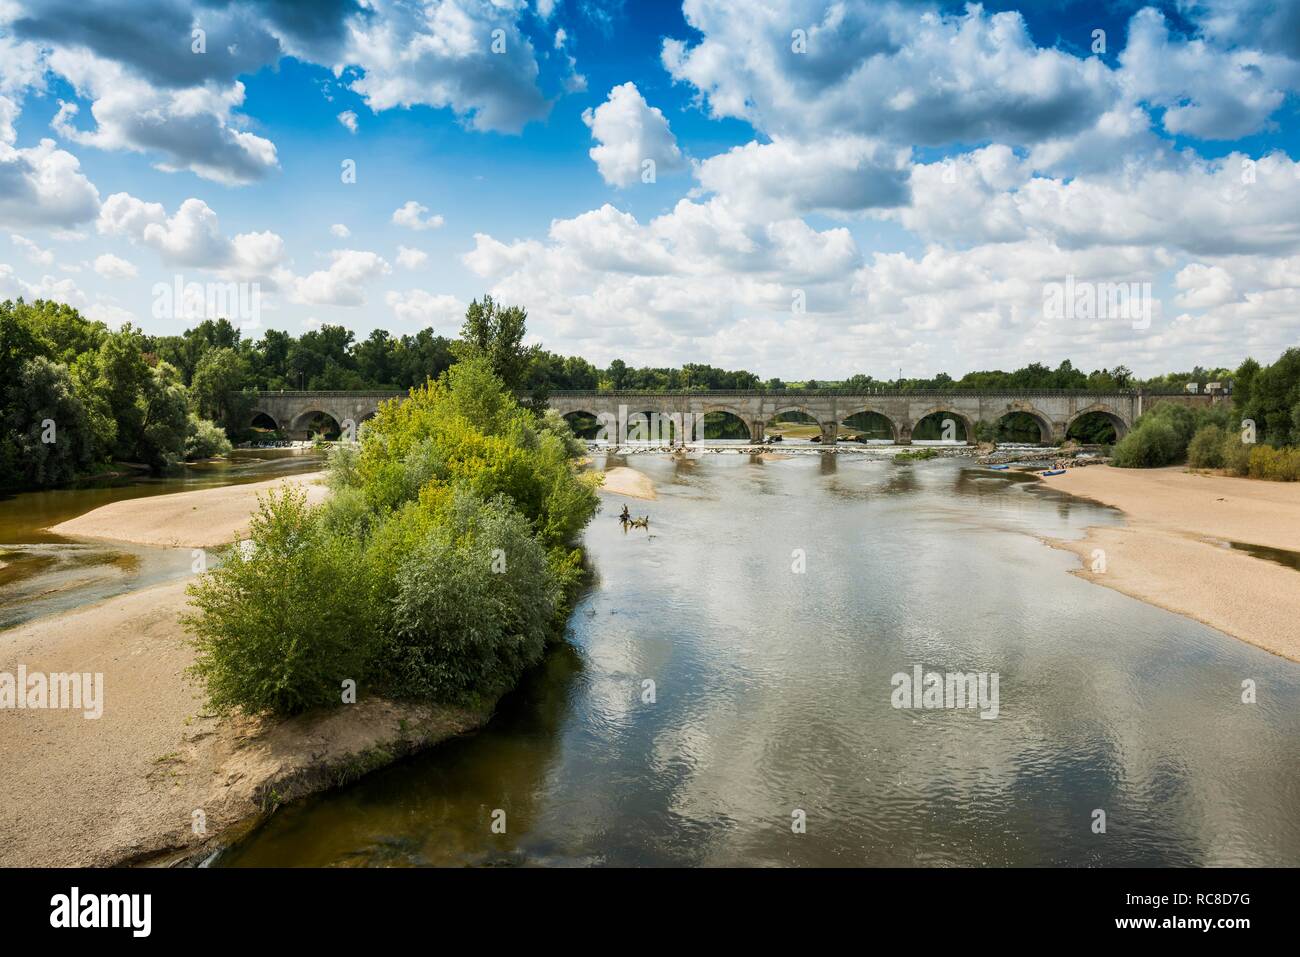 Pont-canal sur l'Allier, le Pont canal du Guétin, canal de la Loire, près de Nevers, Loire, Nièvre, Centre, France Banque D'Images